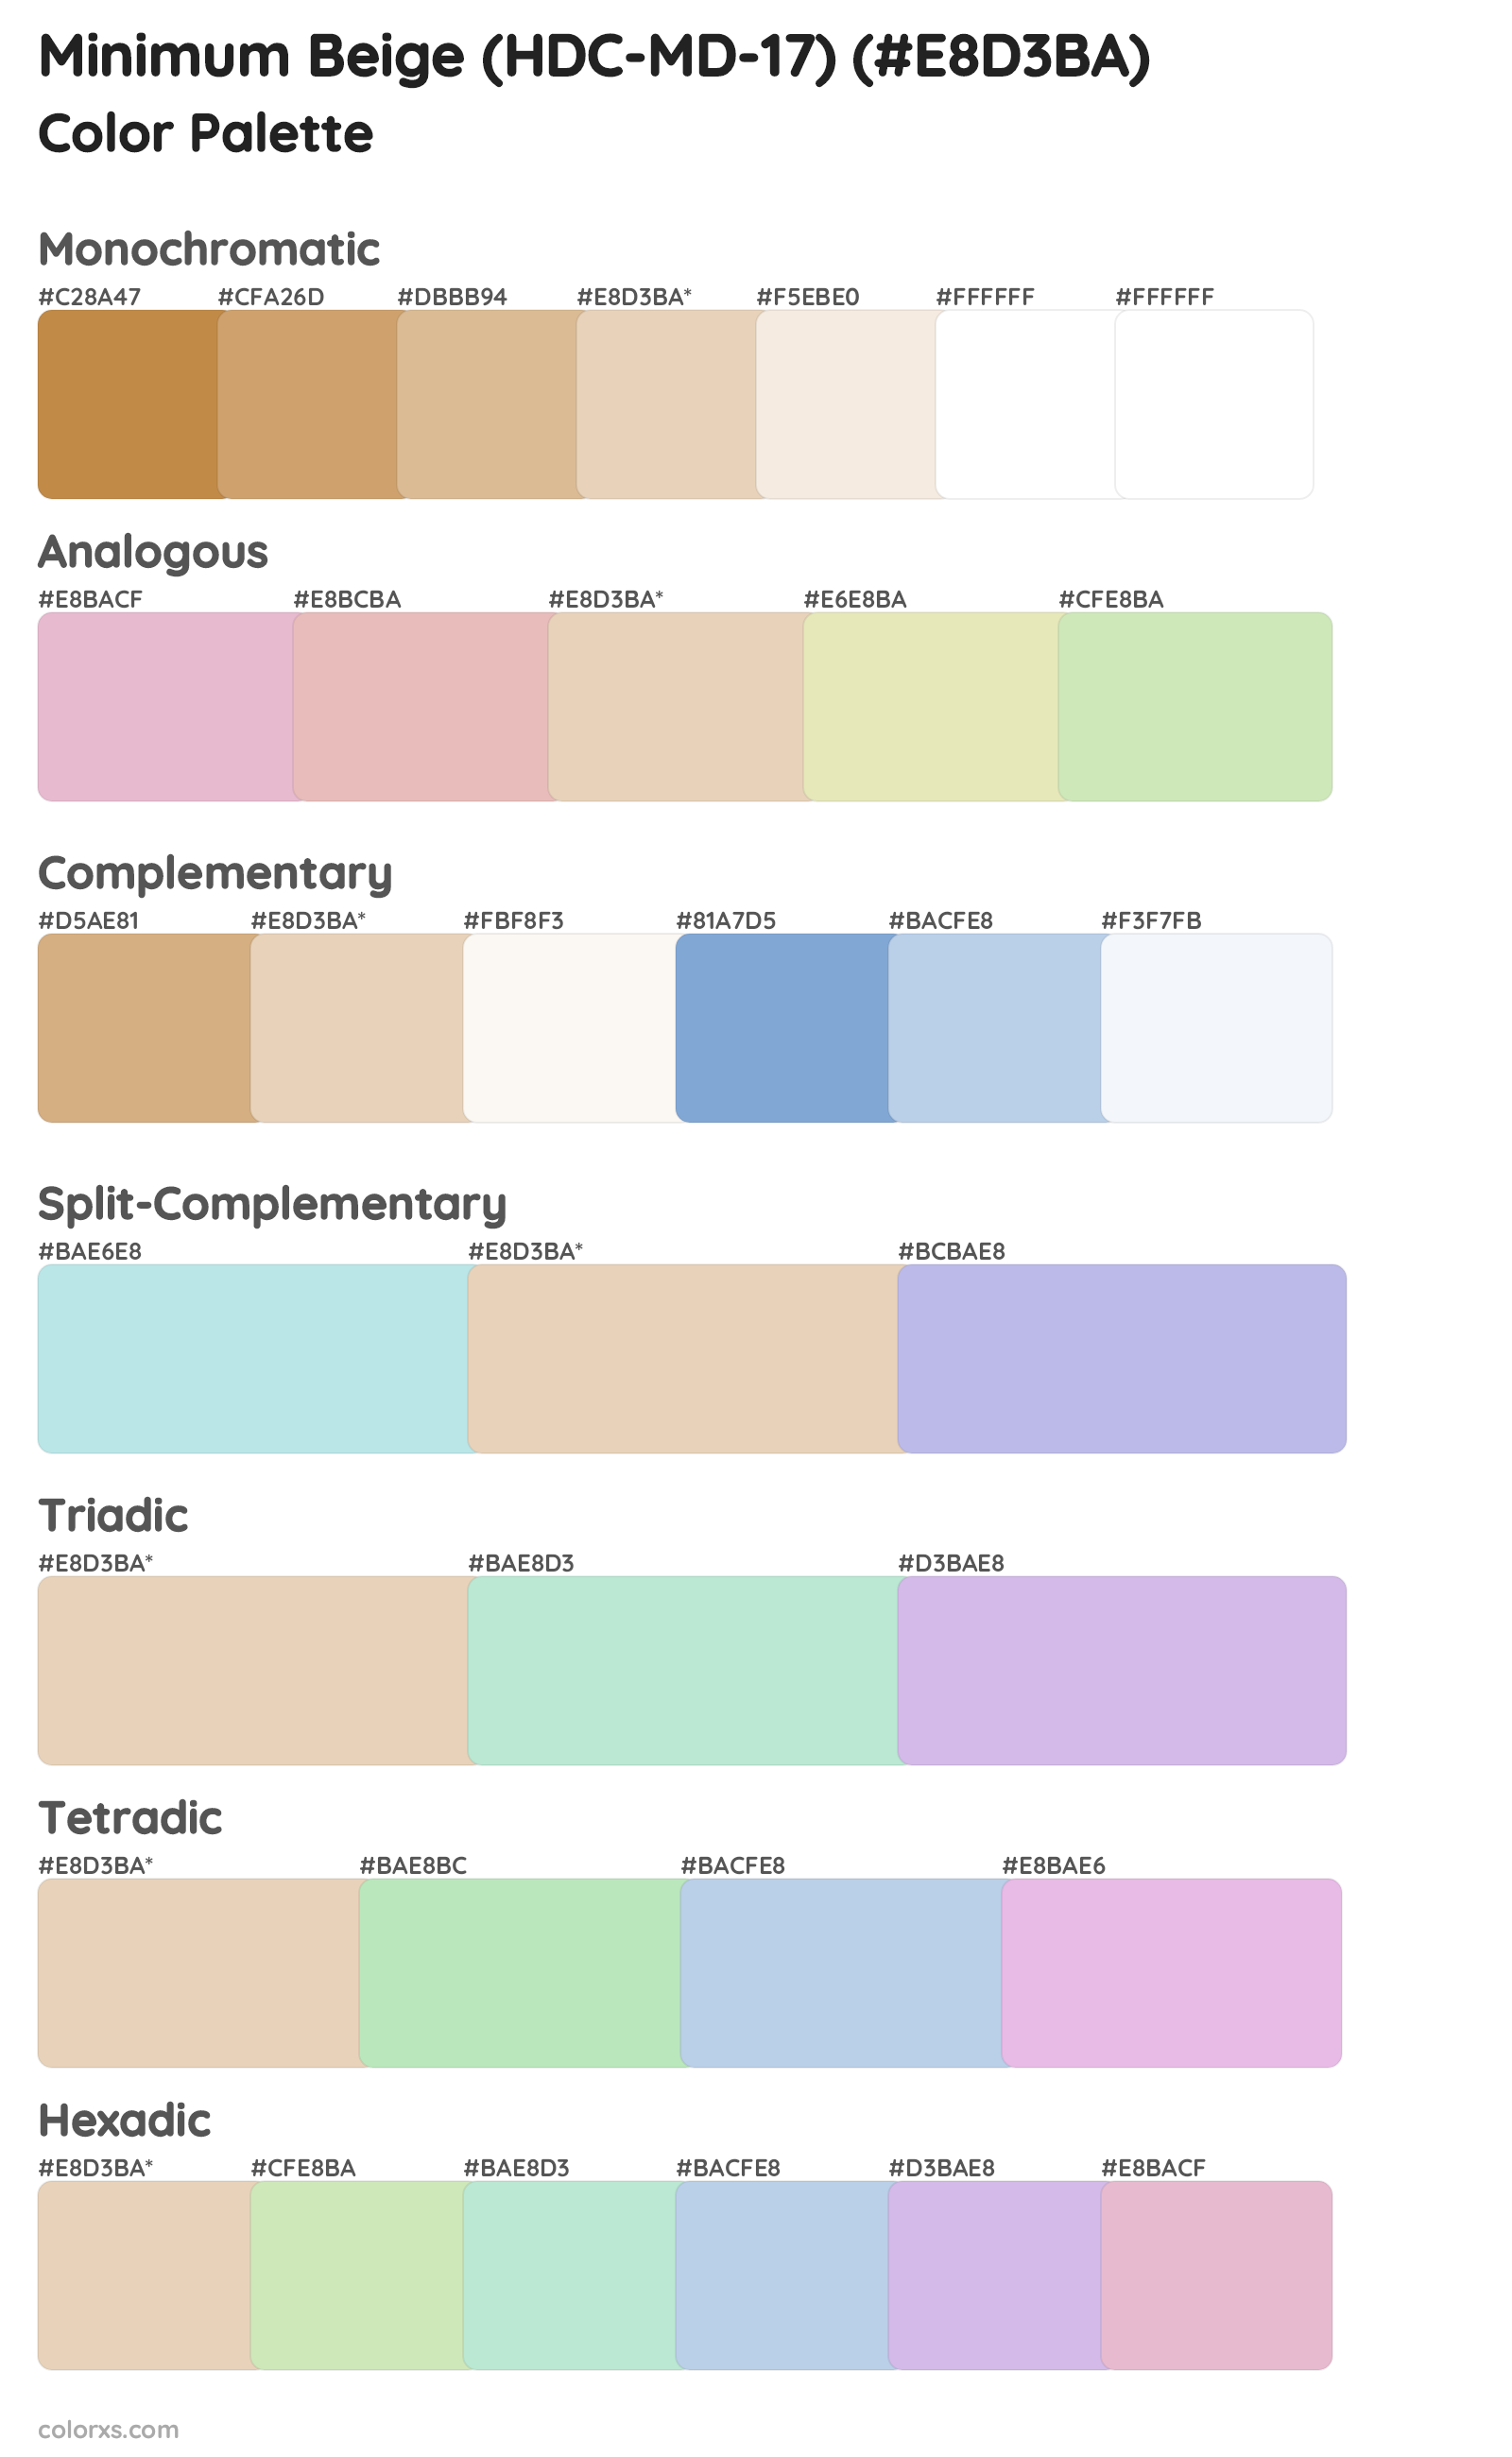 Minimum Beige (HDC-MD-17) Color Scheme Palettes